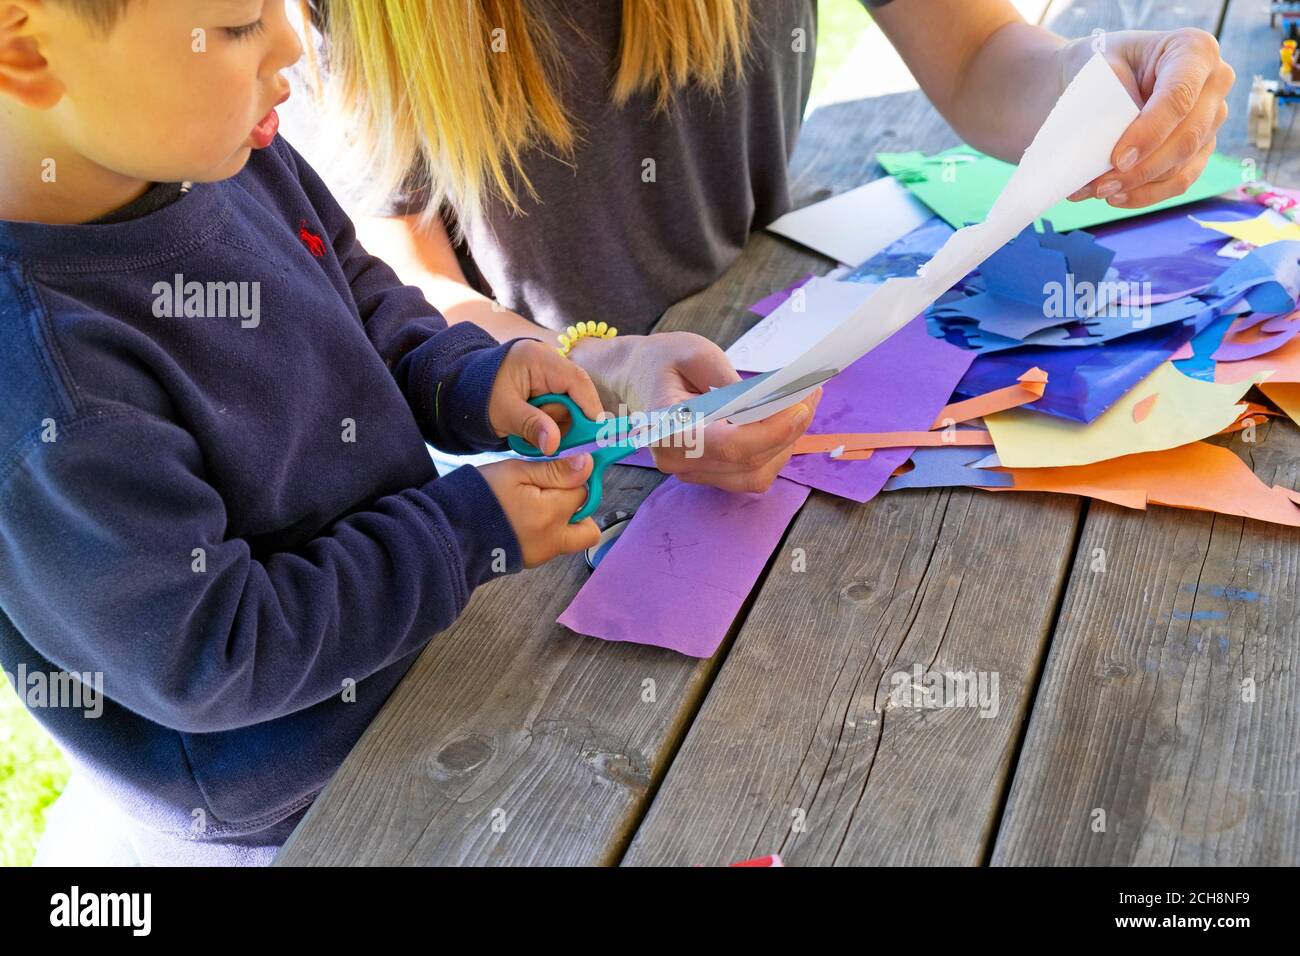 Un jeune enfant de 3 ans apprend à couper du papier avec des ciseaux assis à l'extérieur sur une table avec papier d'art coloré Carmarthenshire pays de Galles Royaume-Uni KATHY DEWITT Banque D'Images